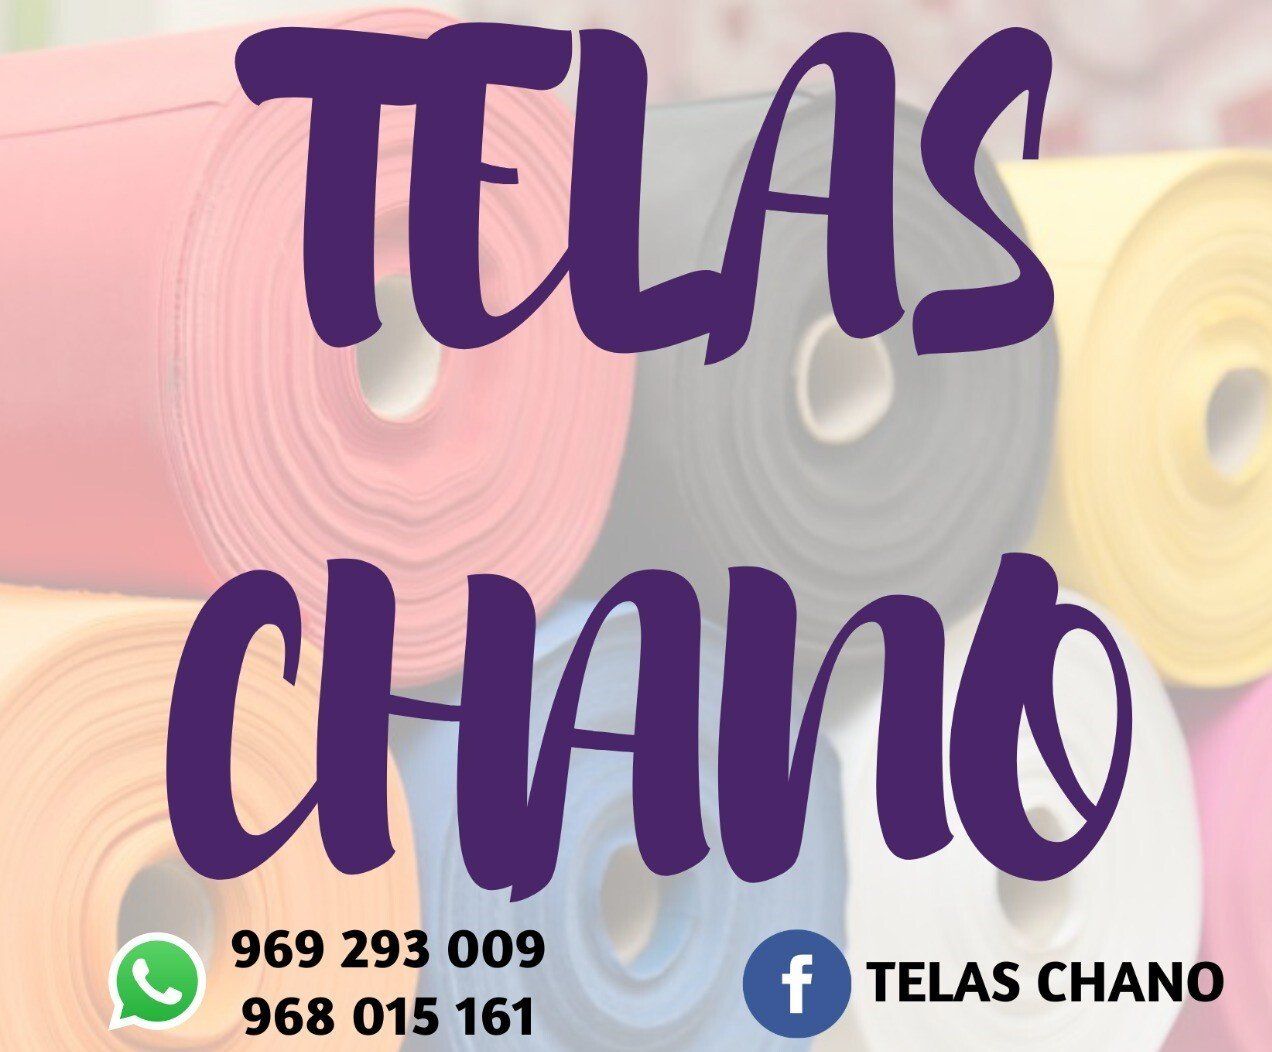 Telas Chano  y  Comercial Villegas, logotipo.